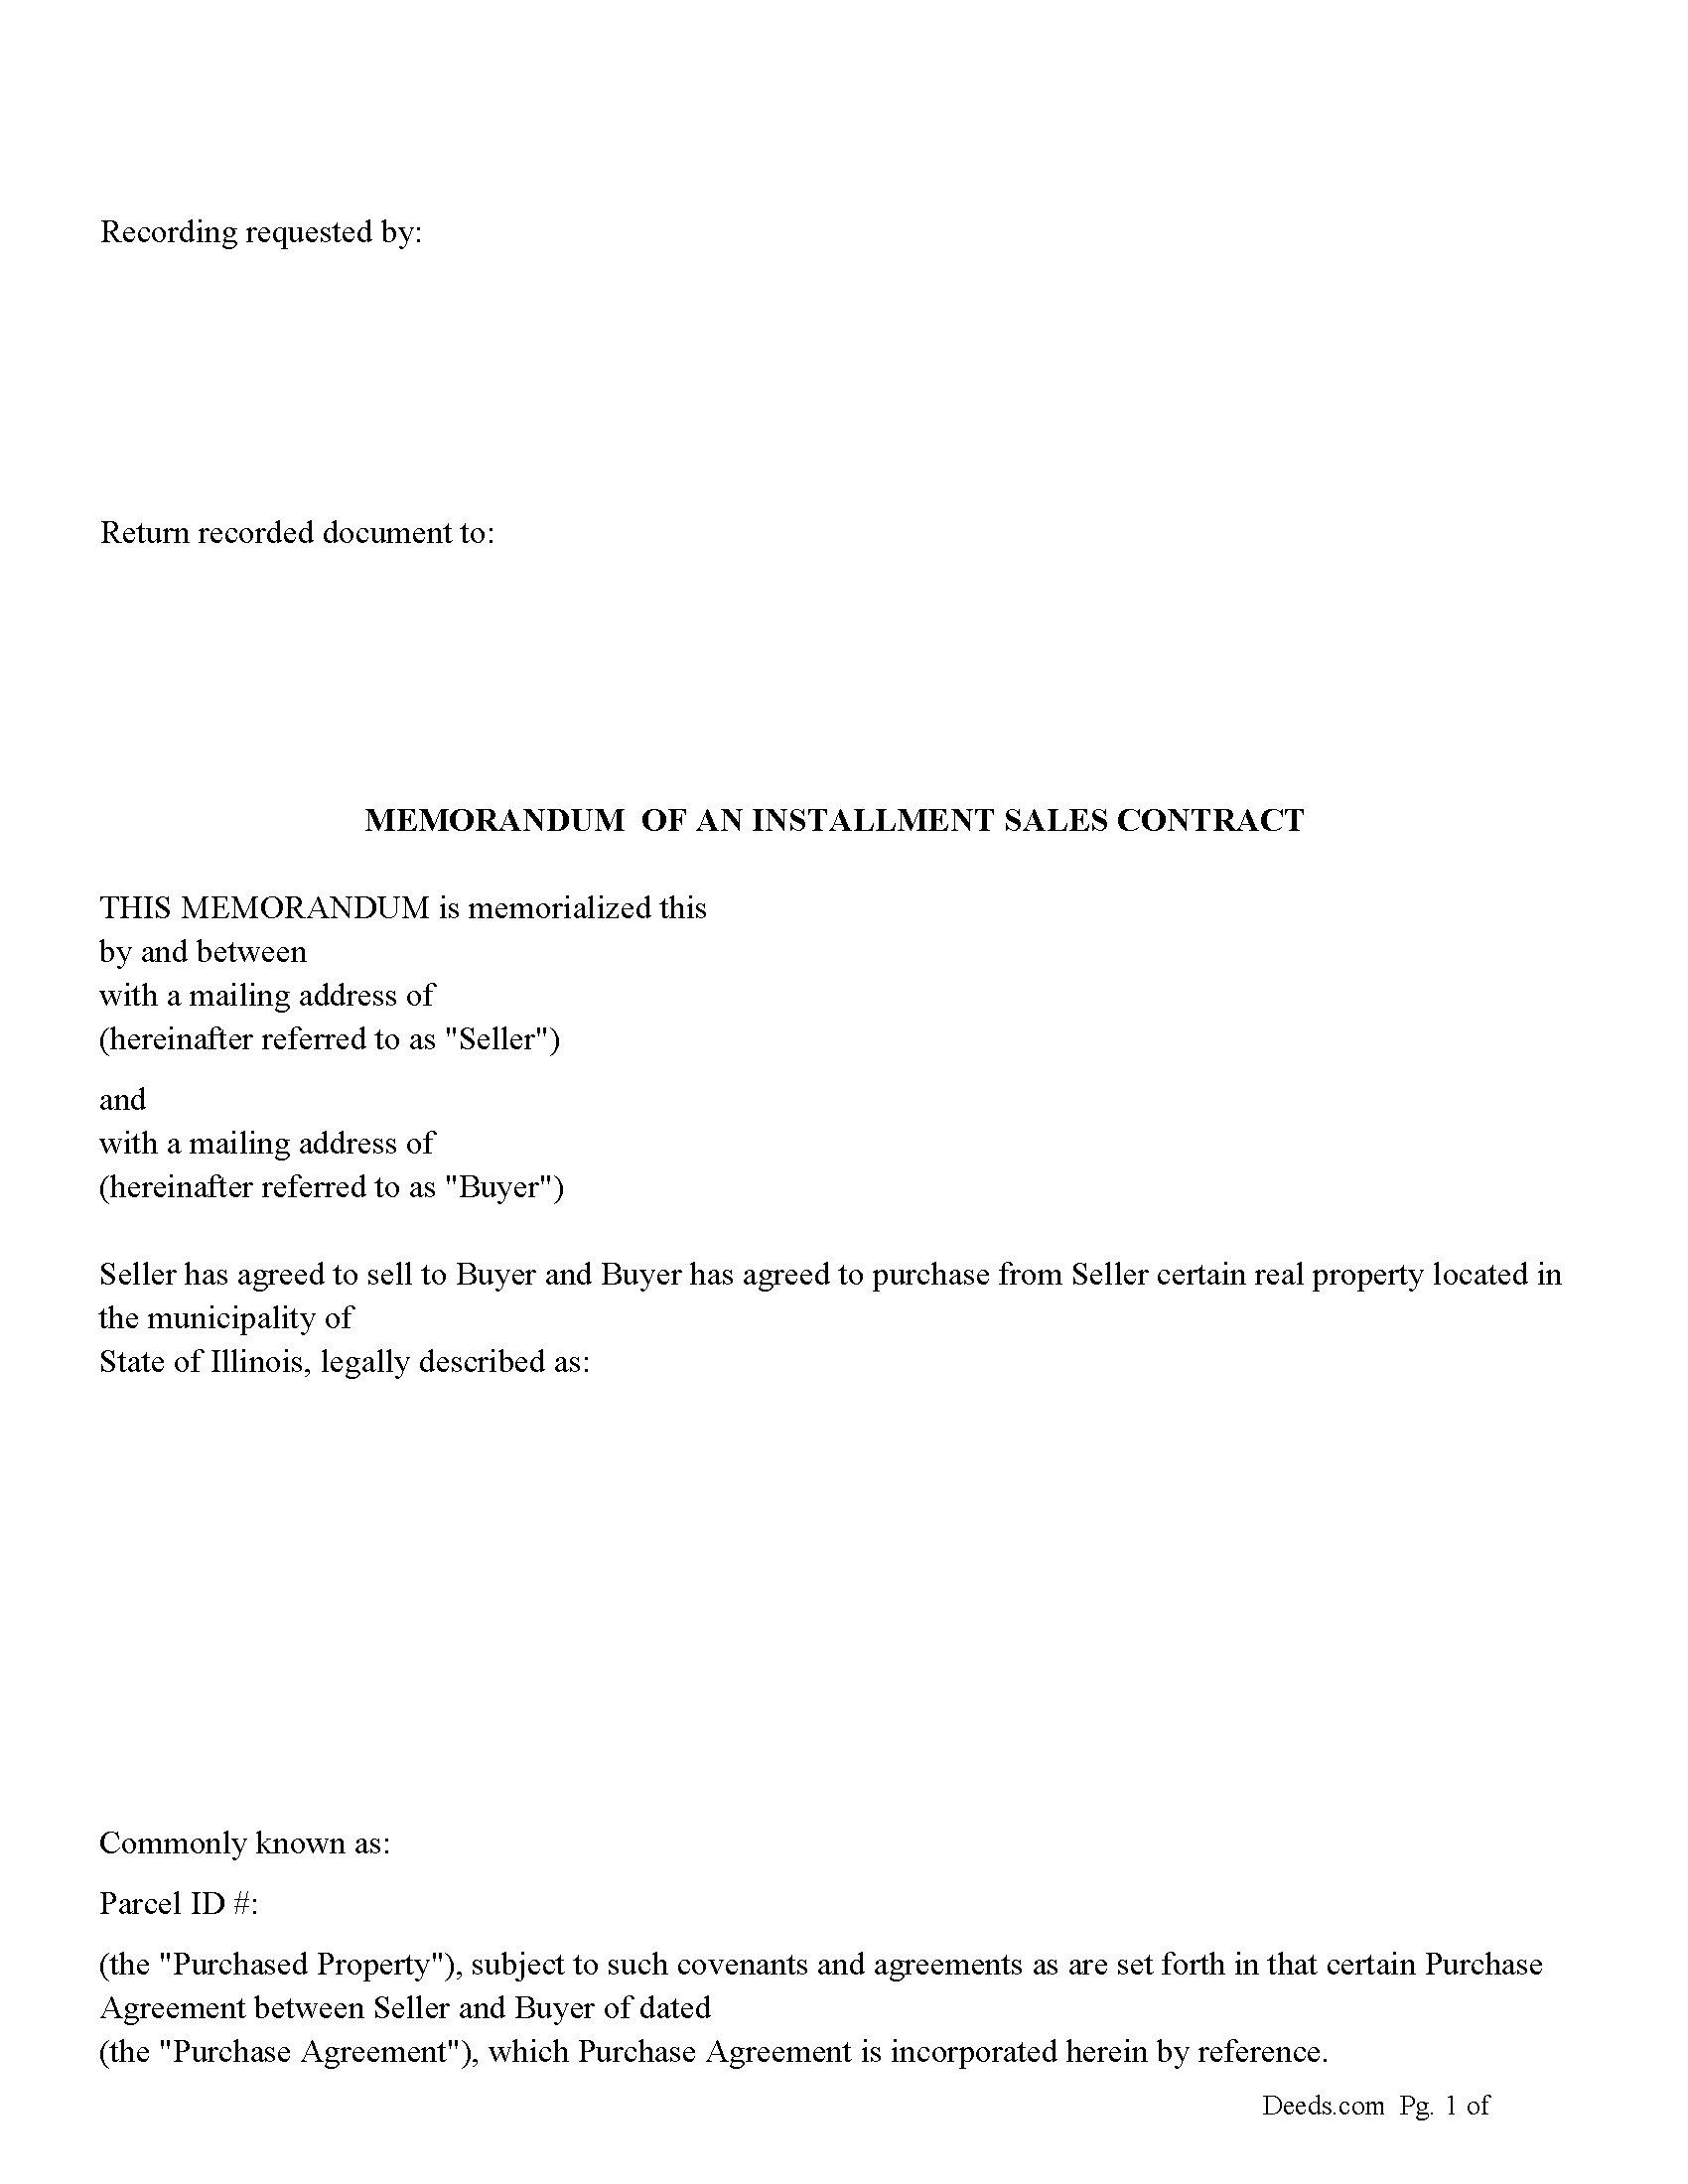 Dekalb County Memorandum of an Installment Sales Contract Form